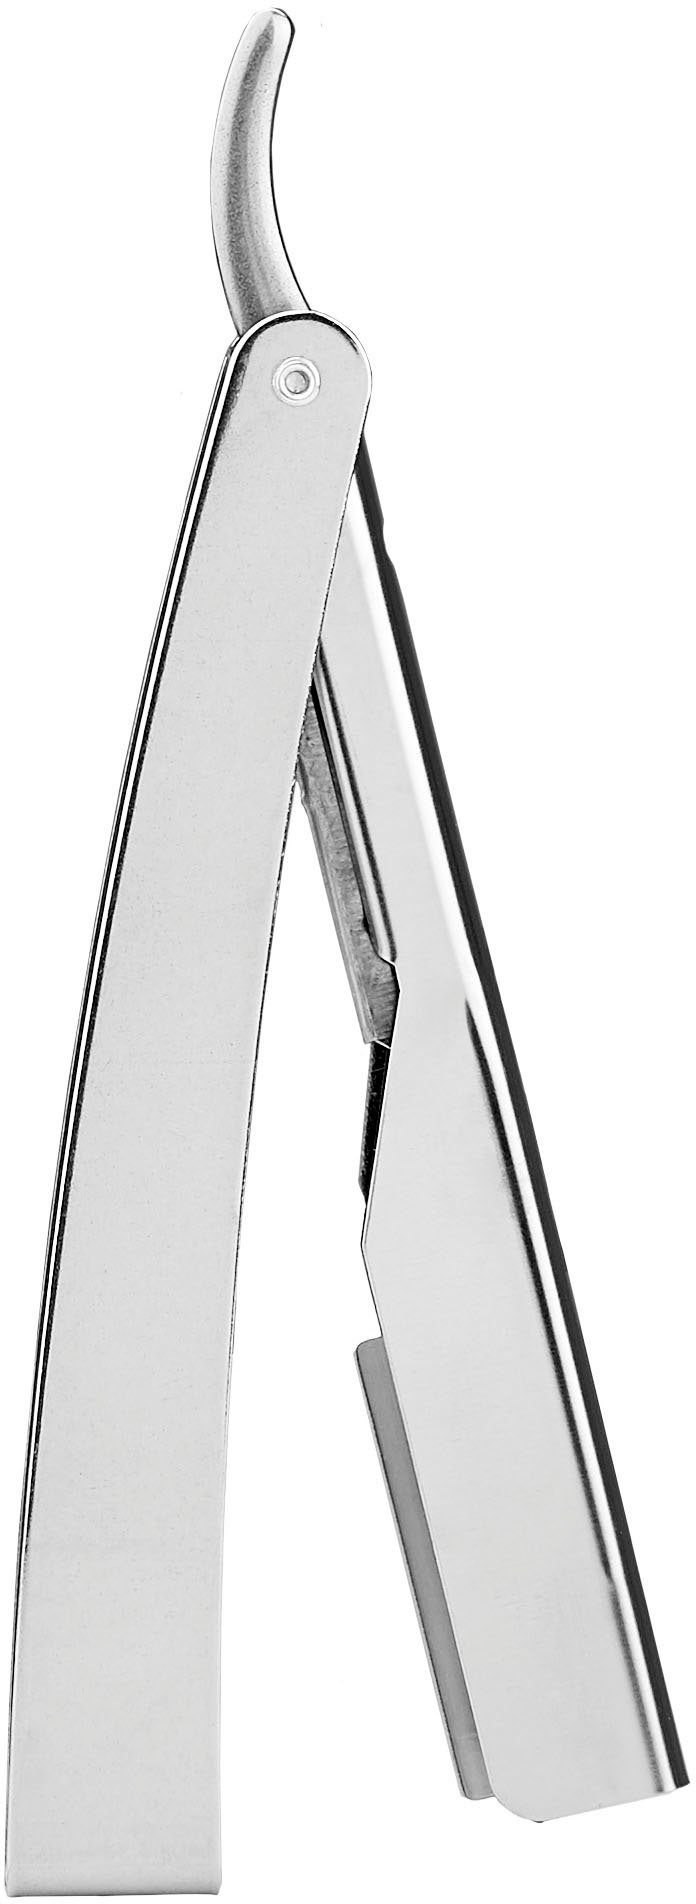 FRIPAC 1955 Rasiermesser silberfarben, Rasiermesser praktischem Klappgriff mit